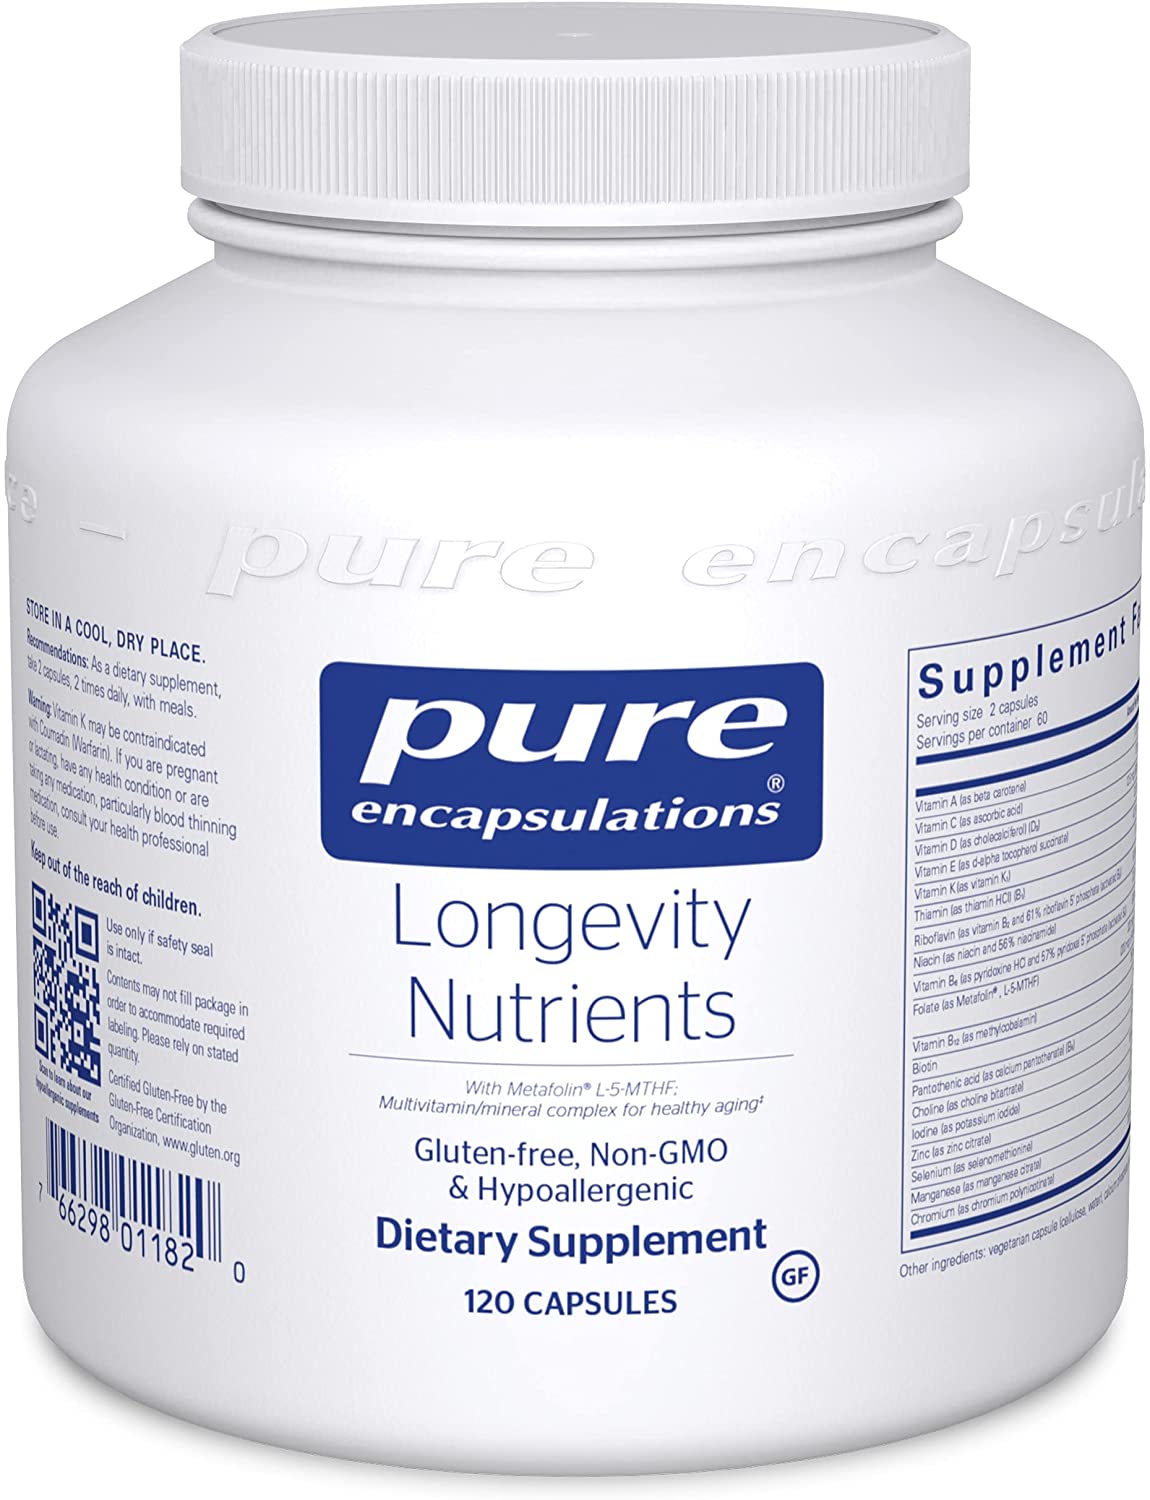 Longevity-Nutrients-120s